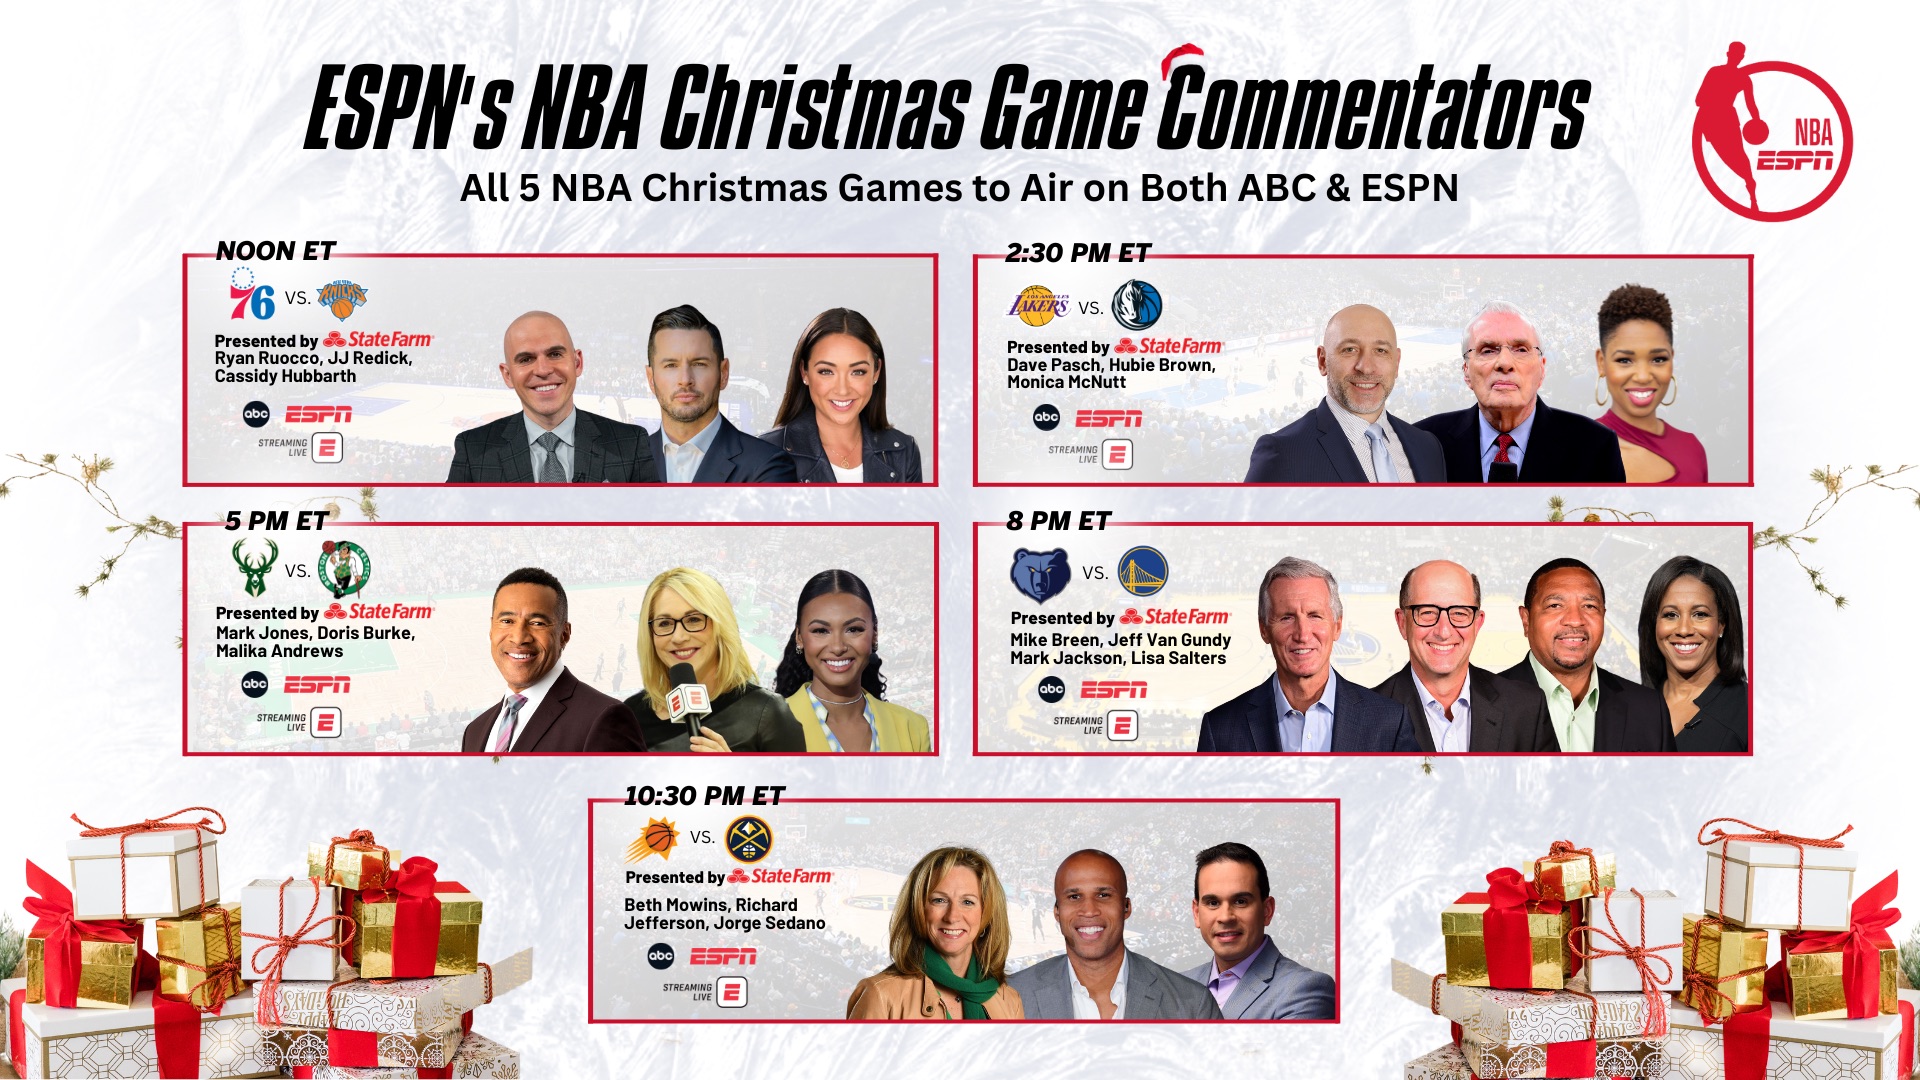 NBA Christmas Day, dove vederlo Gratis in Streaming